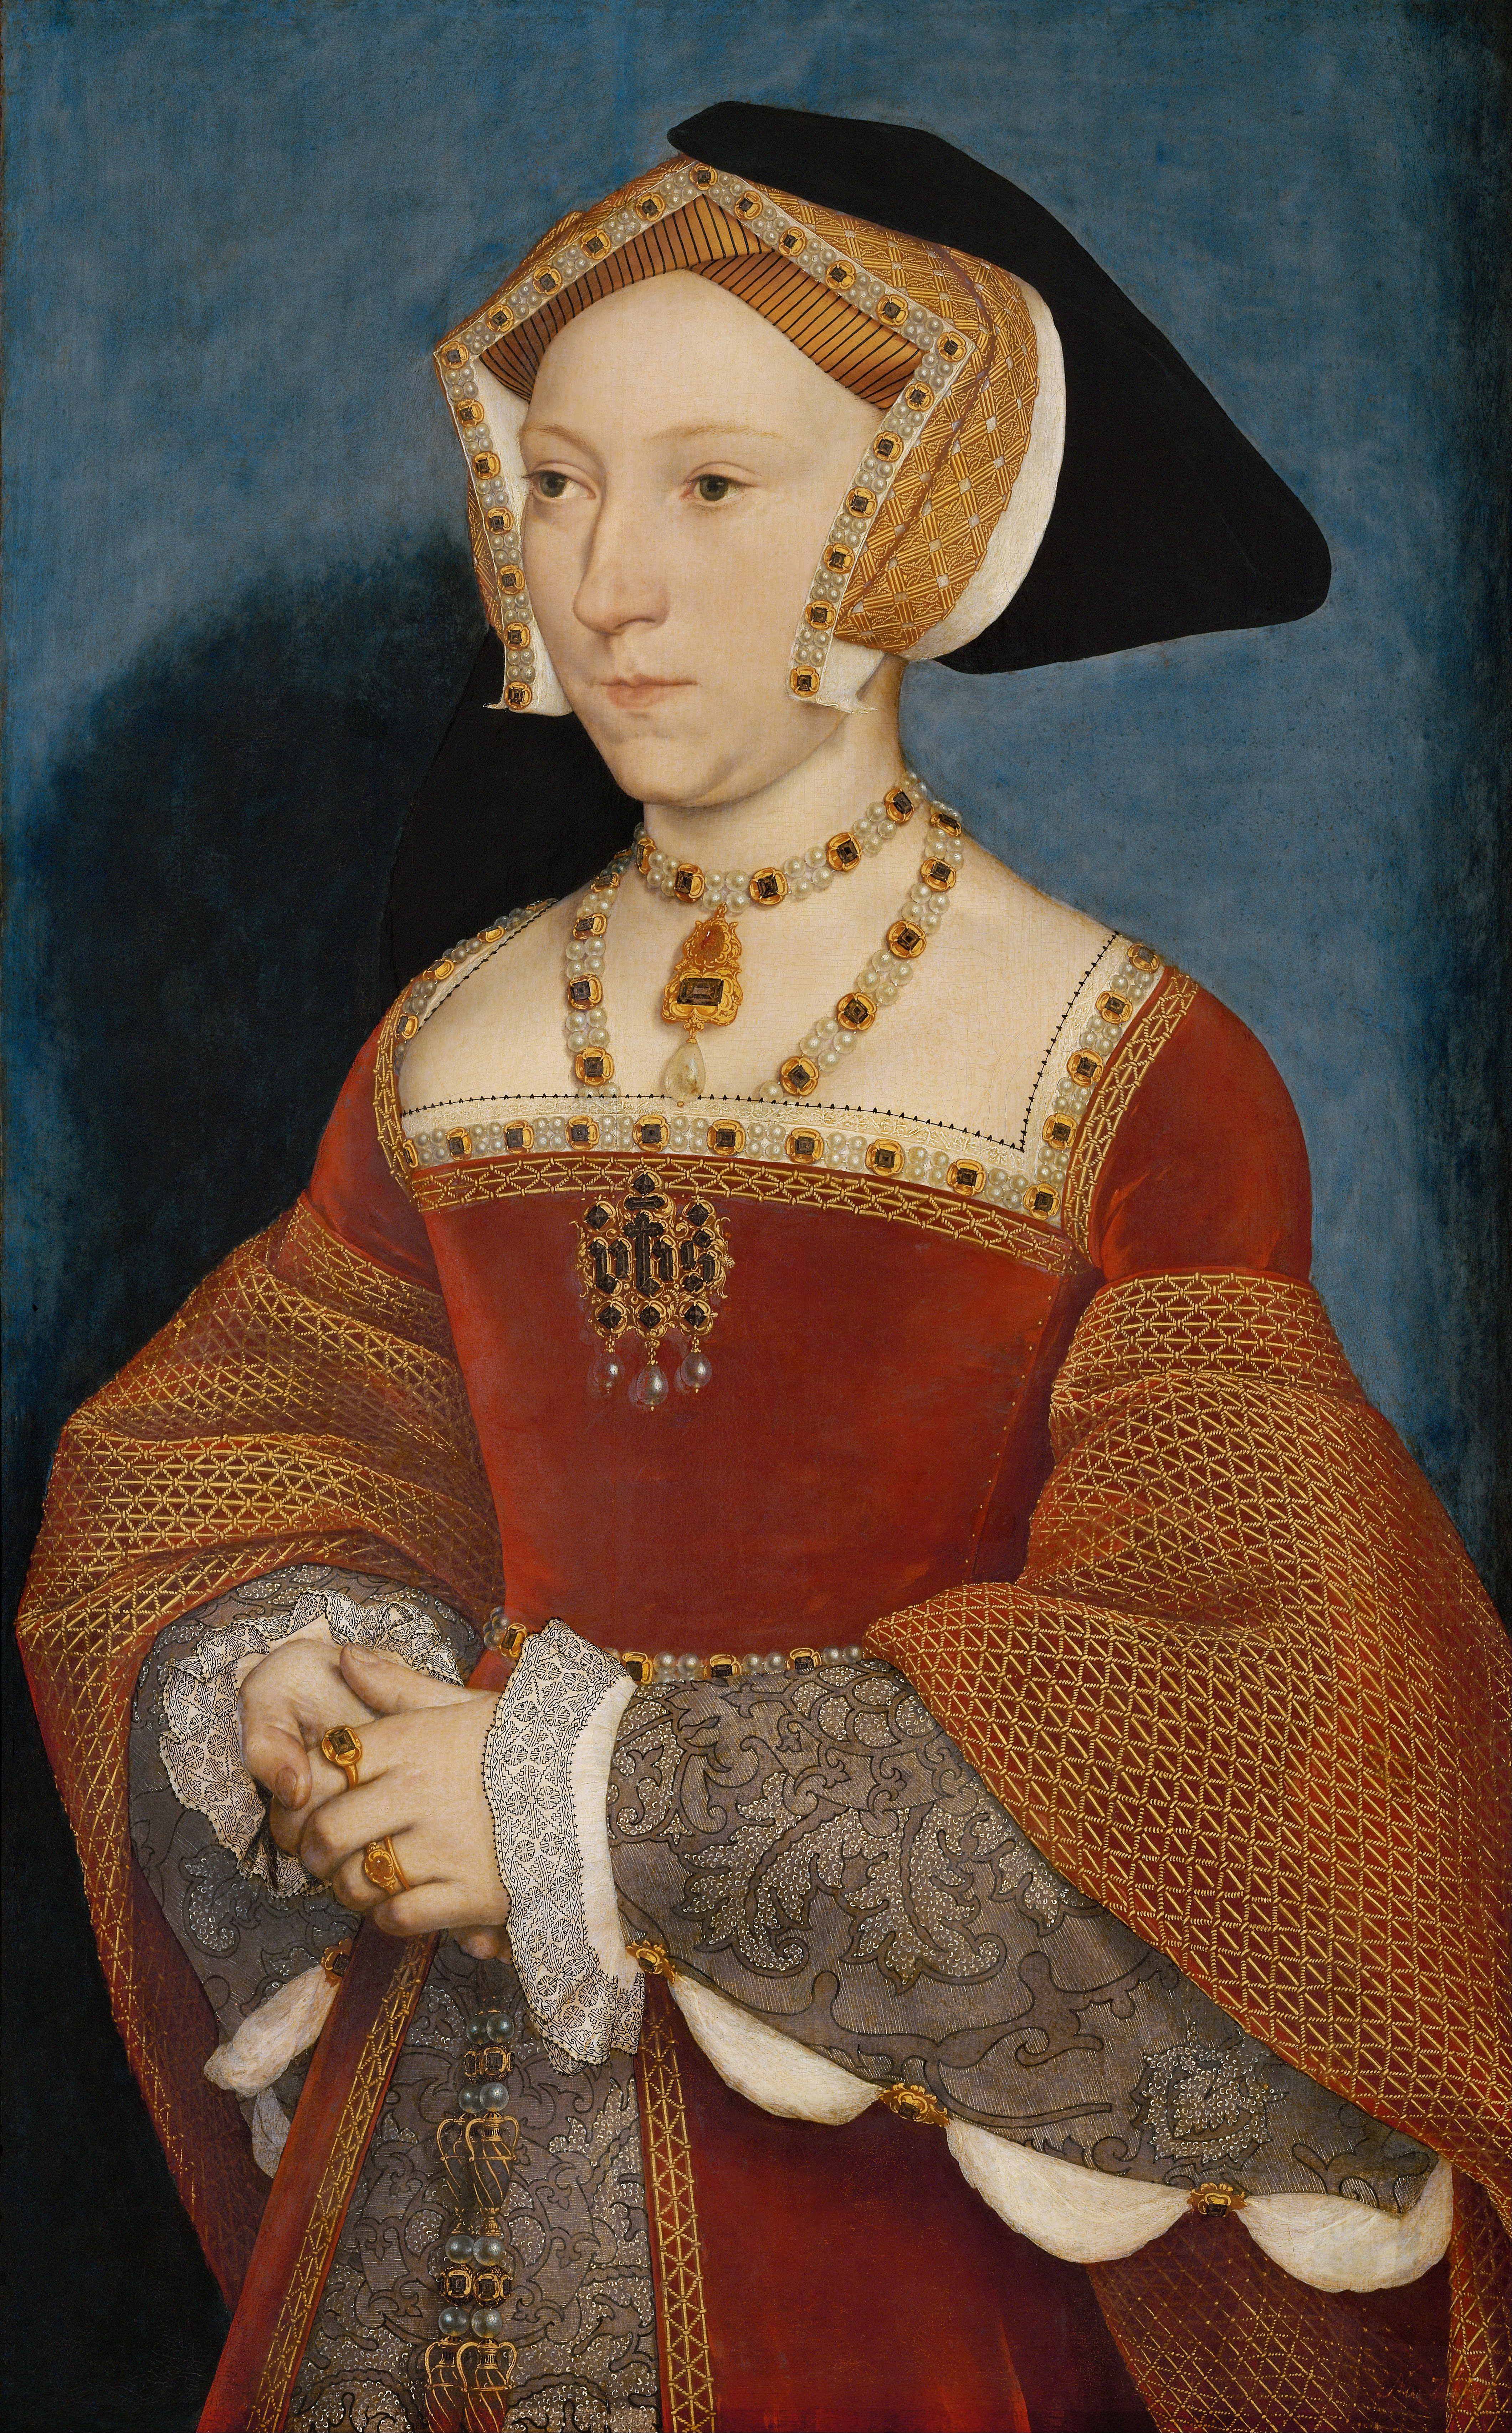 Hans Holbein [Public domain], via Wikimedia Commons